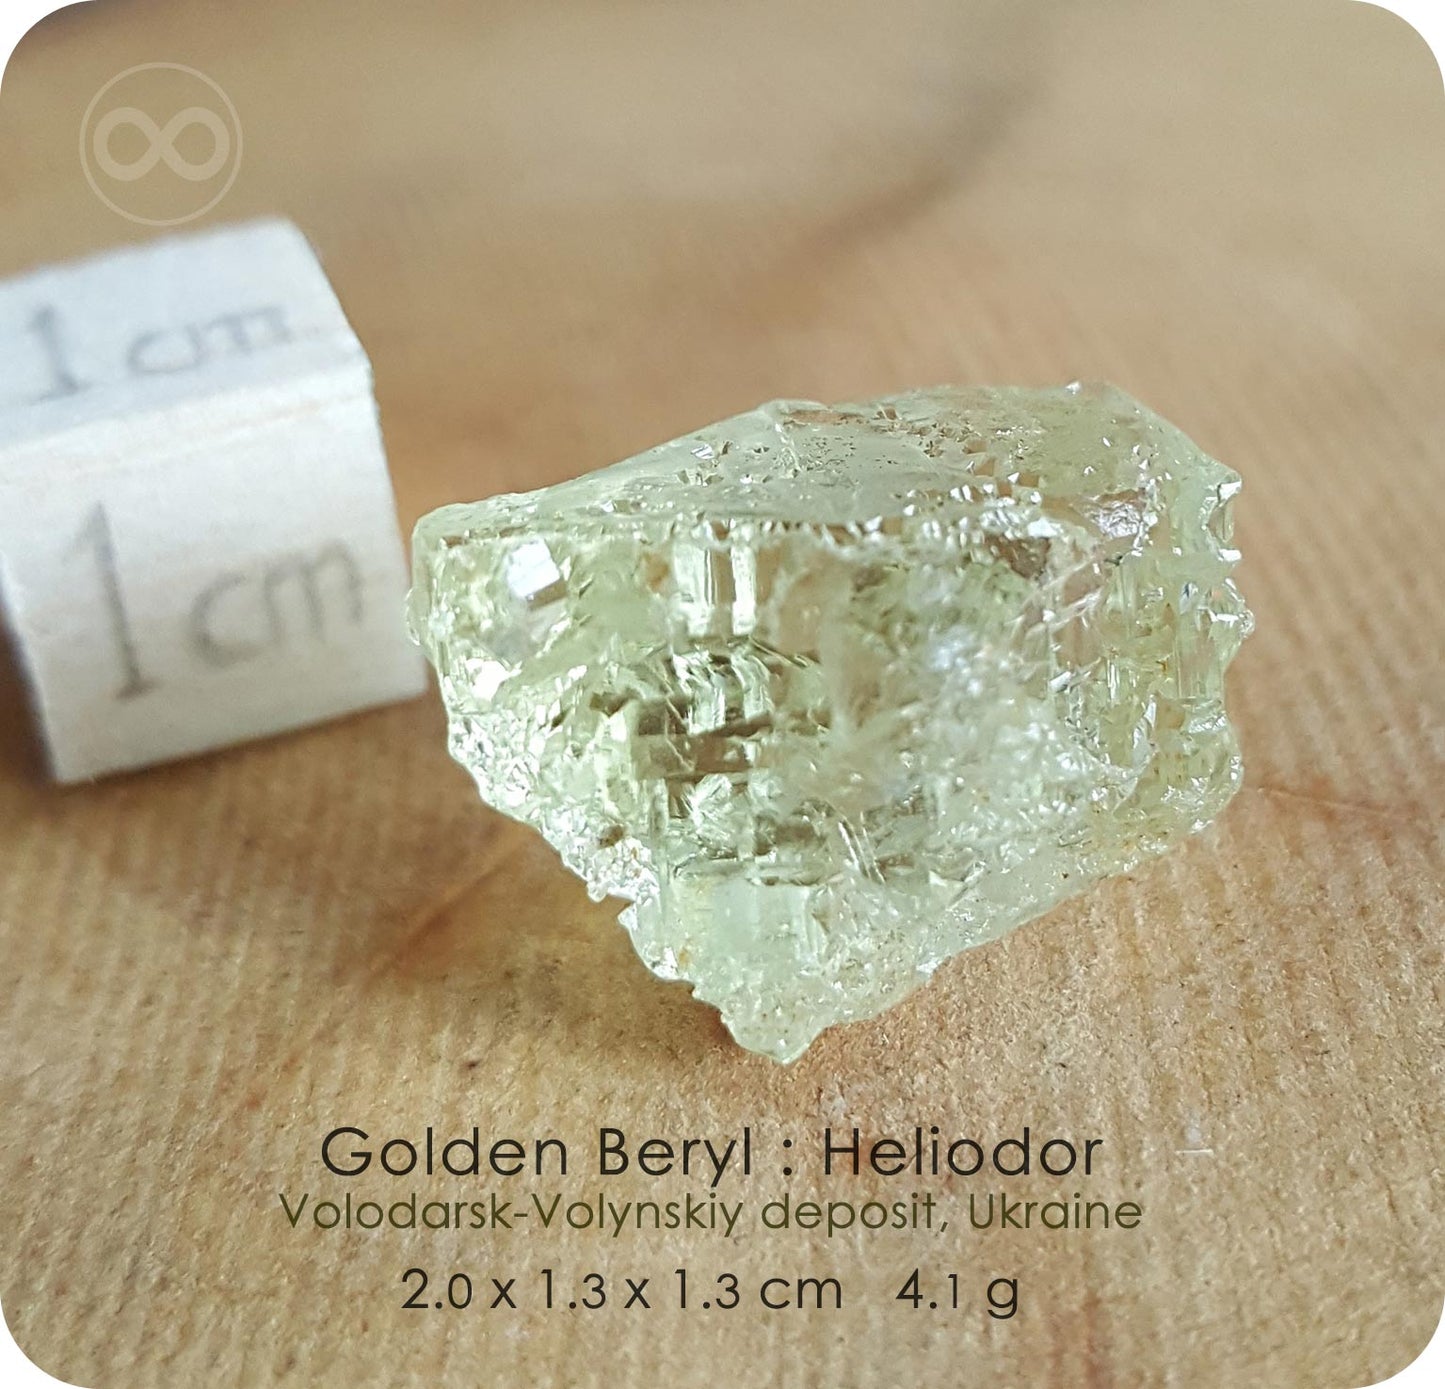 Gem Golden Heliodor 10K SOLID Gold Pendant - H236